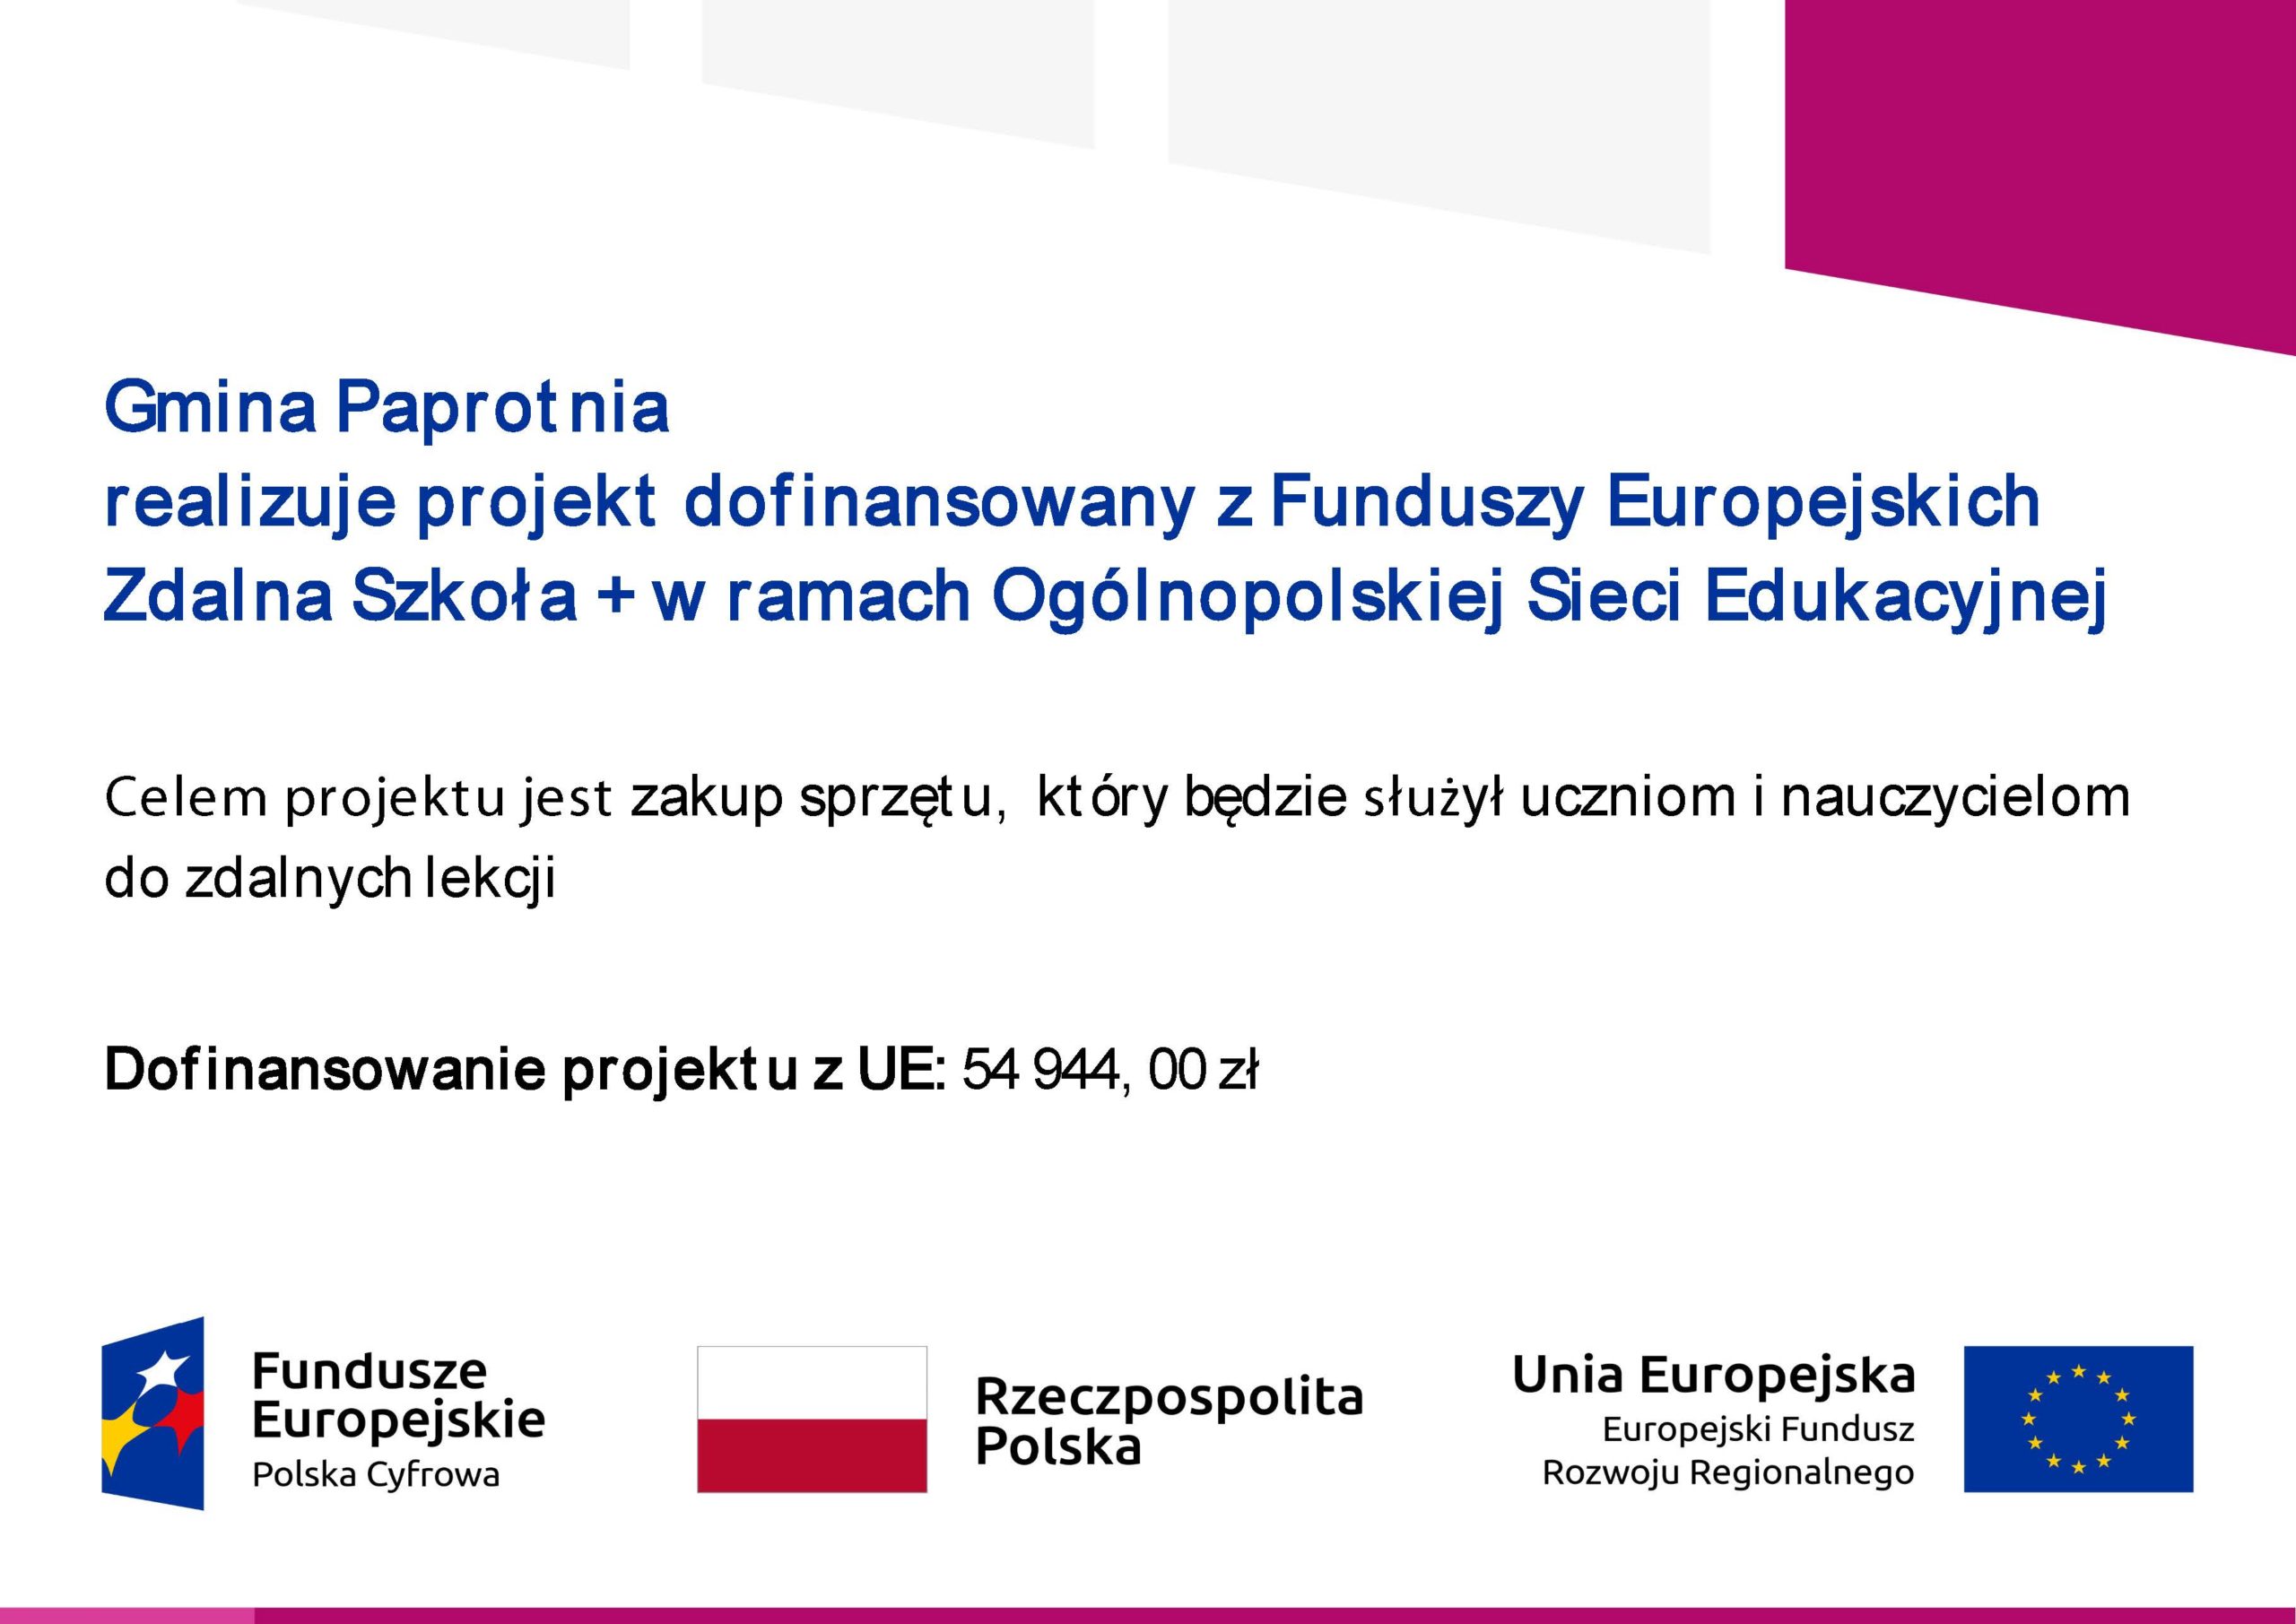 Gmina Paprotnia realizuje projekt dofinansowany z Funduszy Europejskich Zdalna Szkoła + w ramach Ogólnopolskiej Sieci Edukacyjnej Celem projektu jest zakup sprzętu, który będzie służył uczniom i nauczycielom do zdalnych lekcji Dofinansowanie projektu z UE: 54 944,00 zł